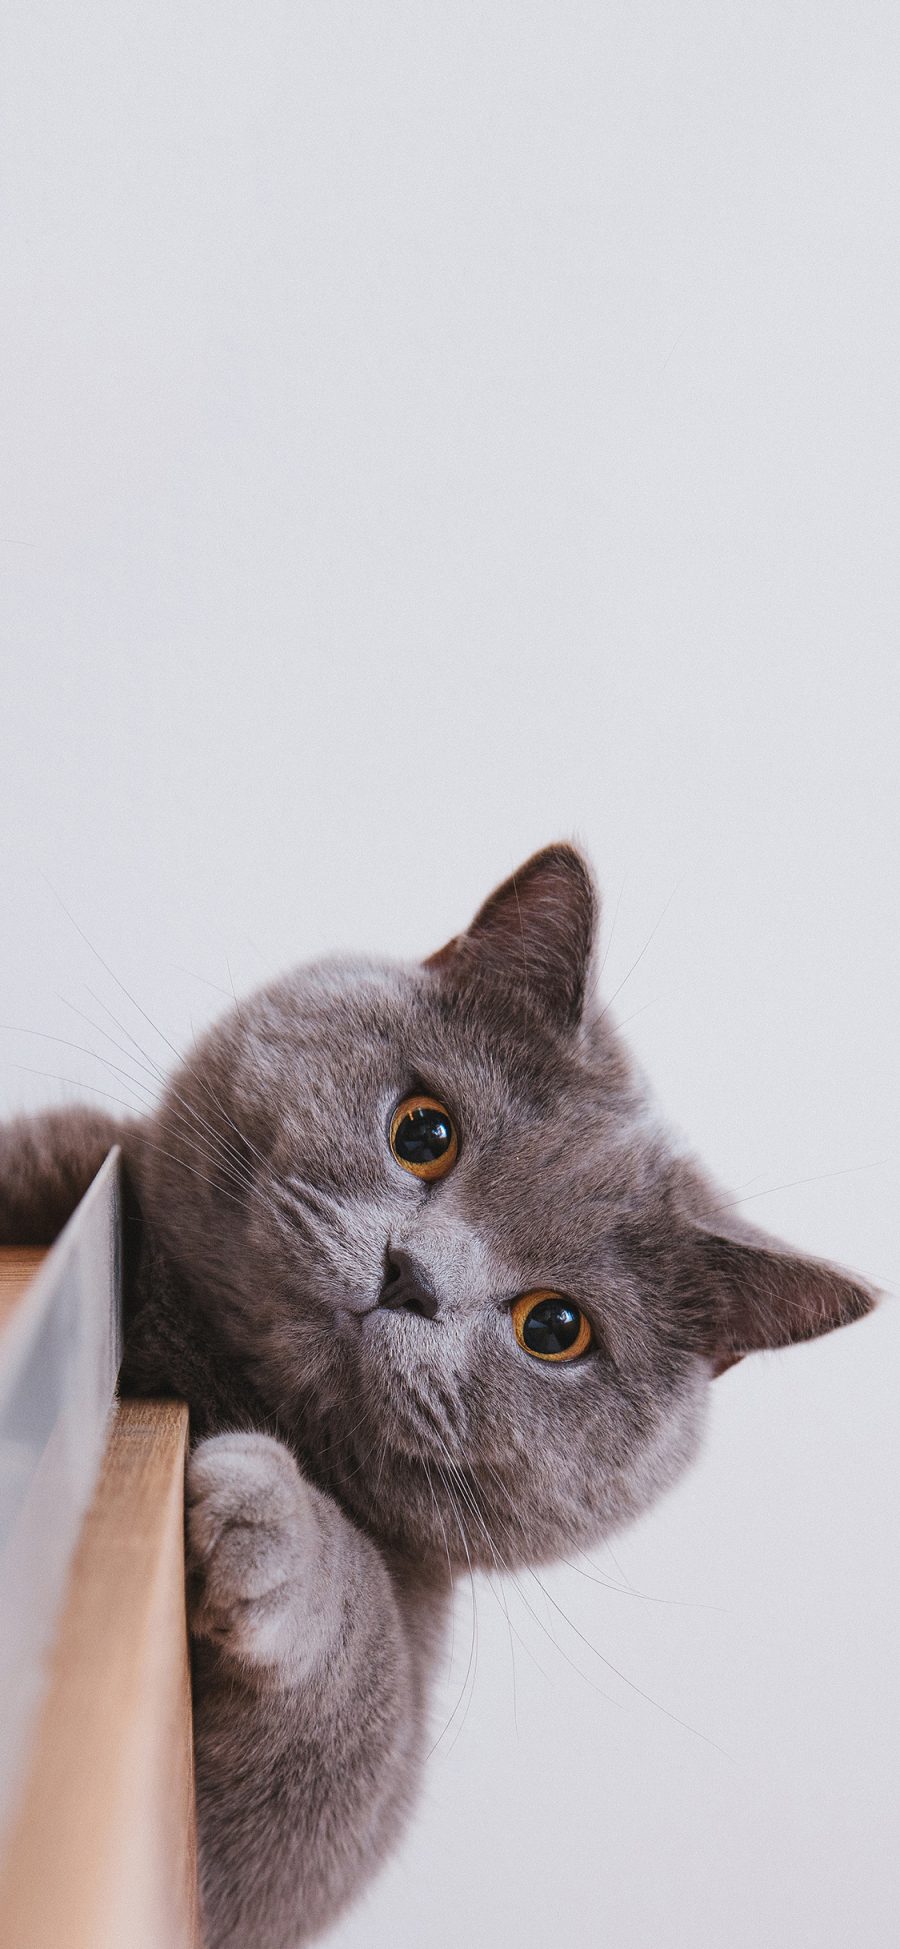 [2436×1125]宠物 猫咪 喵星人 英短 苹果手机壁纸图片